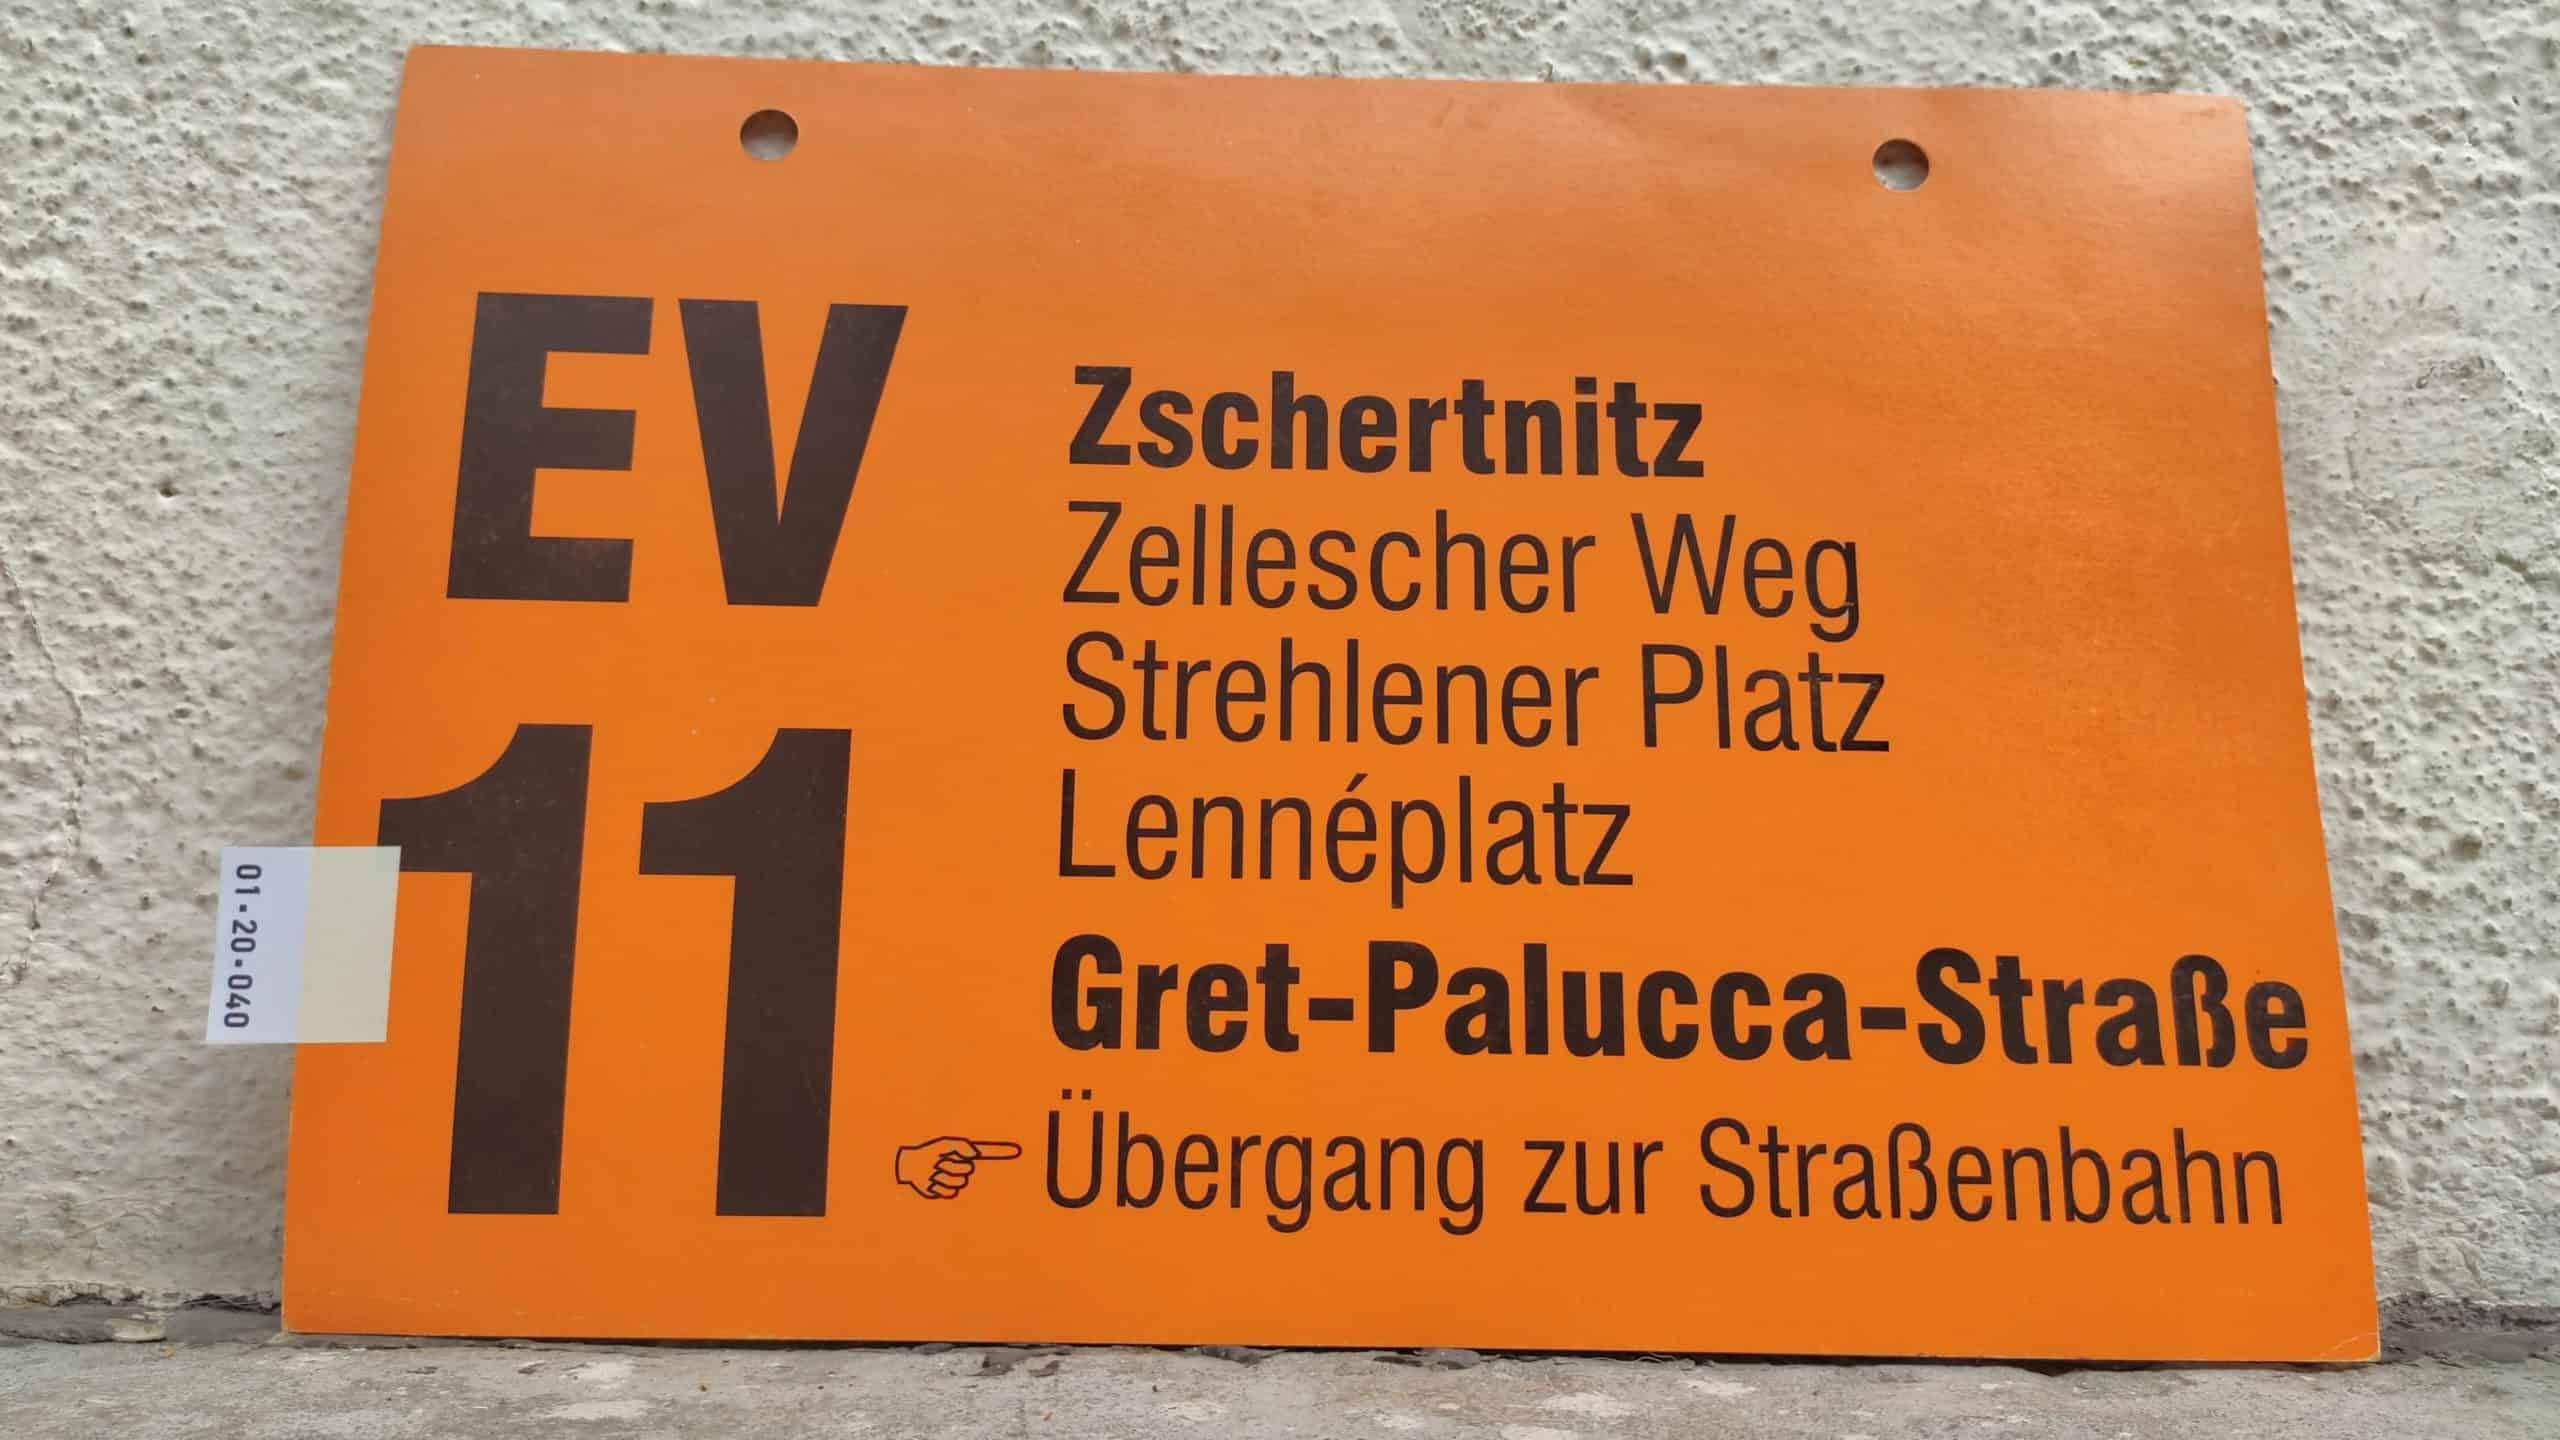 EV 11 Zschertnitz – Gret-Palucca-Straße [Zeigefinger] Übergang zur Straßenbahn